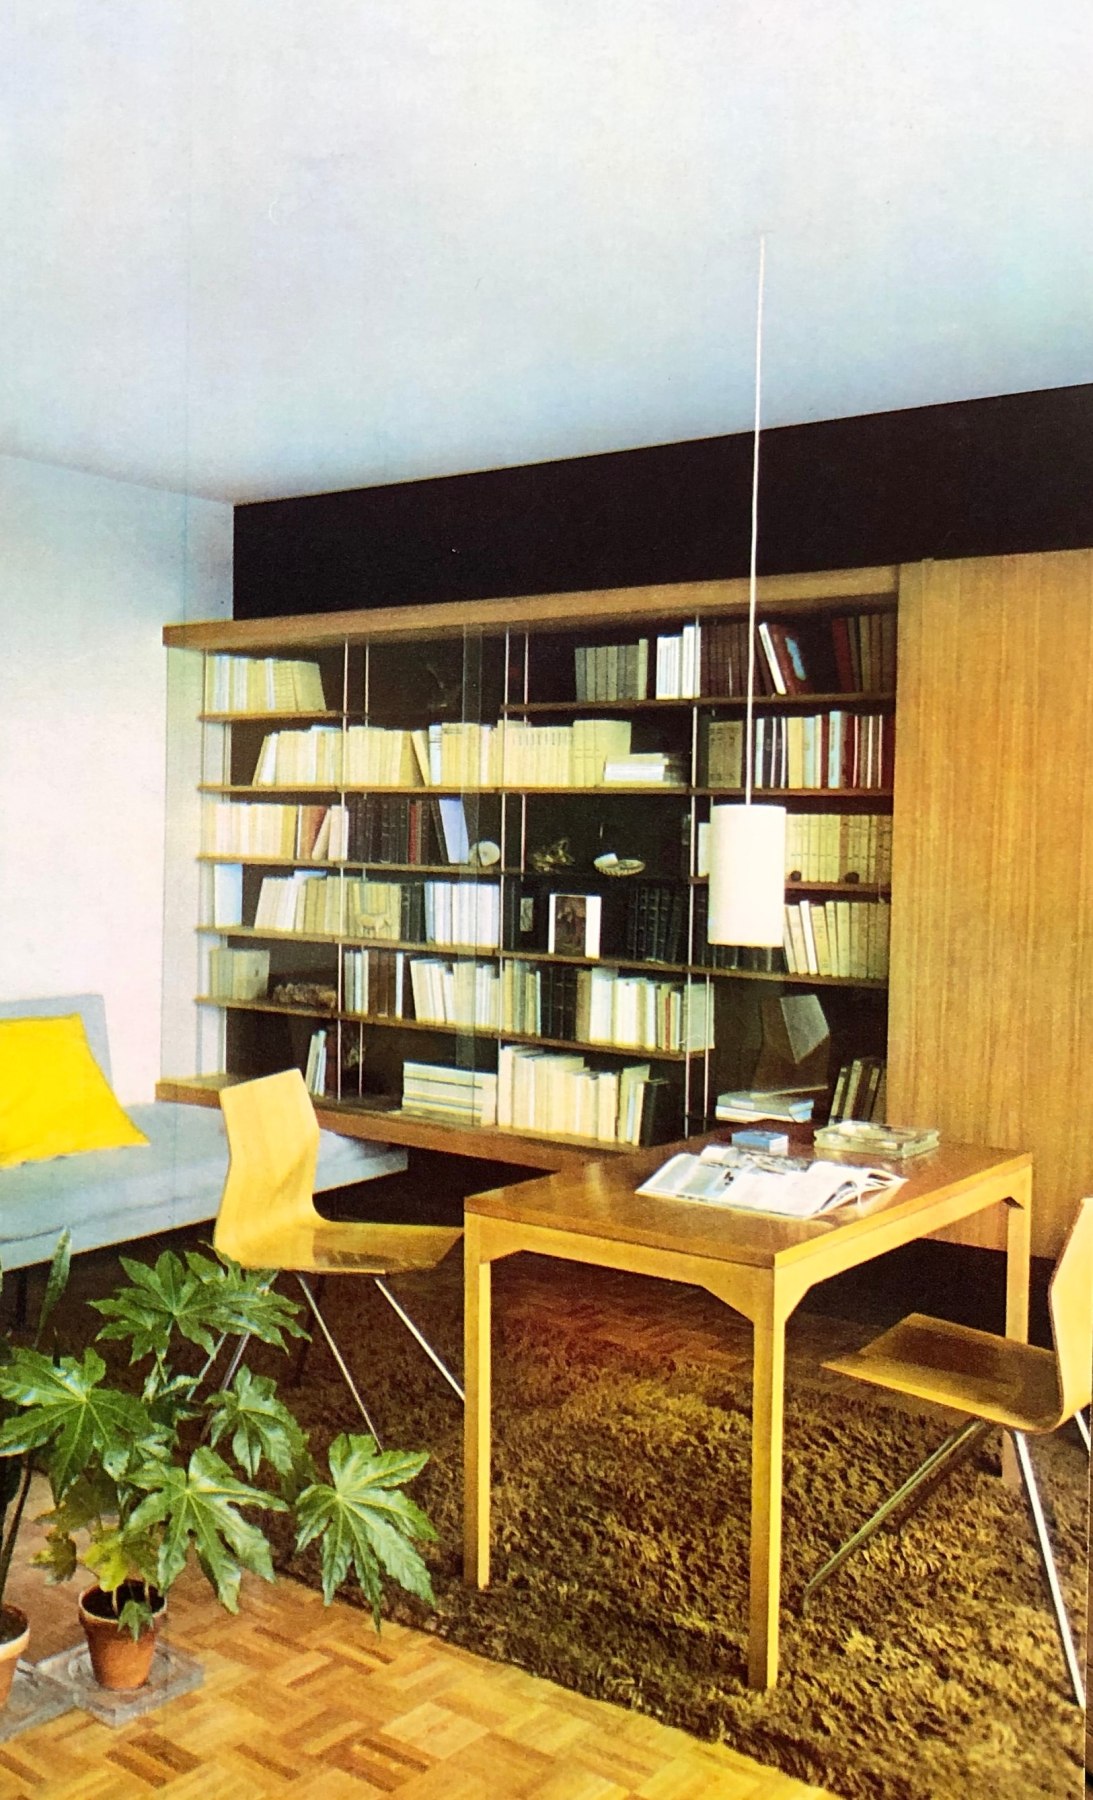 Ren&eacute;-Jean Caillette apartment, c. 1960s